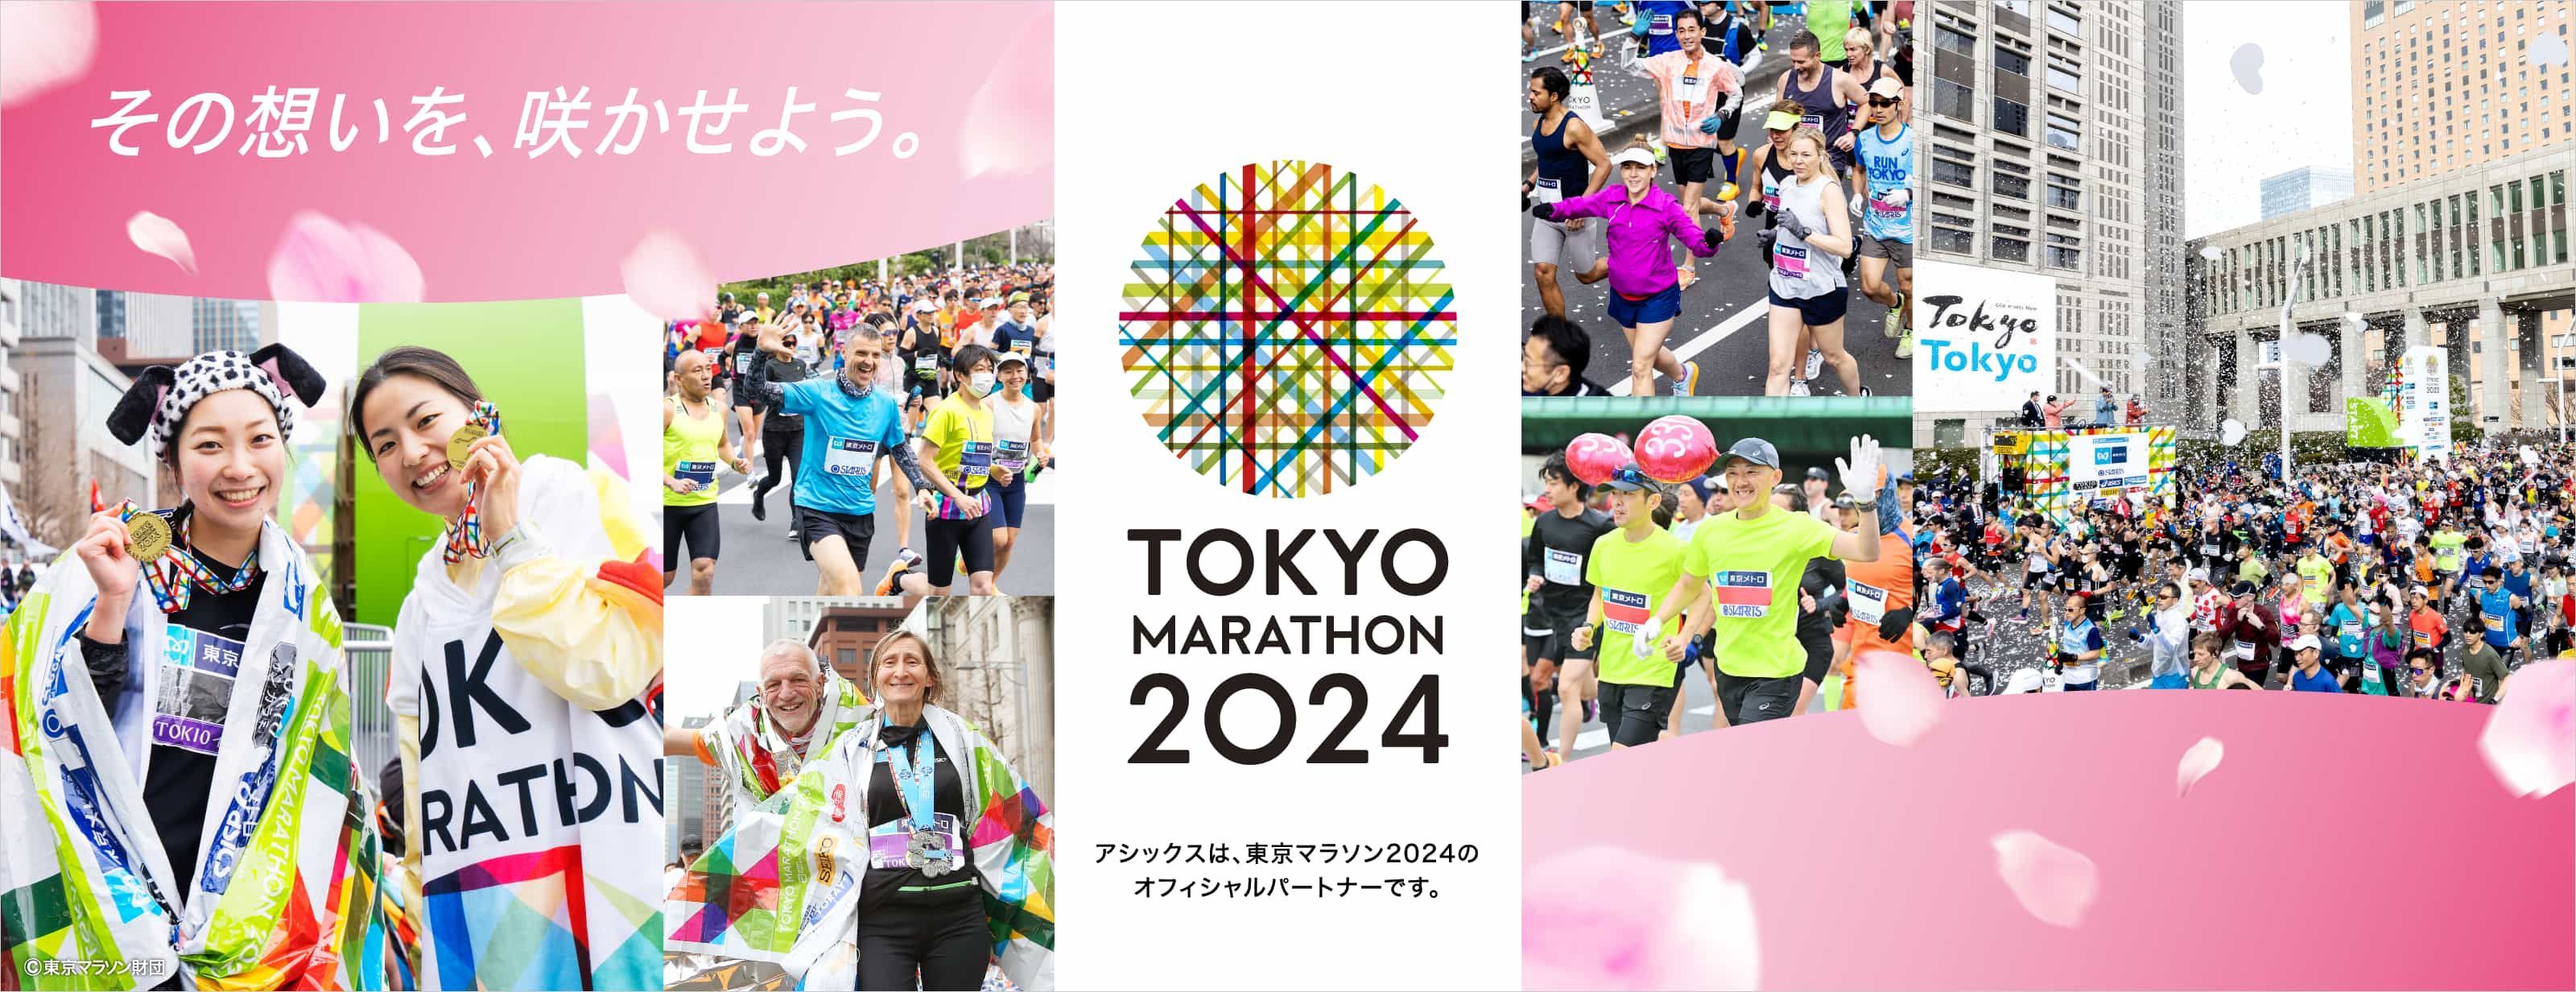 東京マラソン2024 その想いを、咲かせよう。